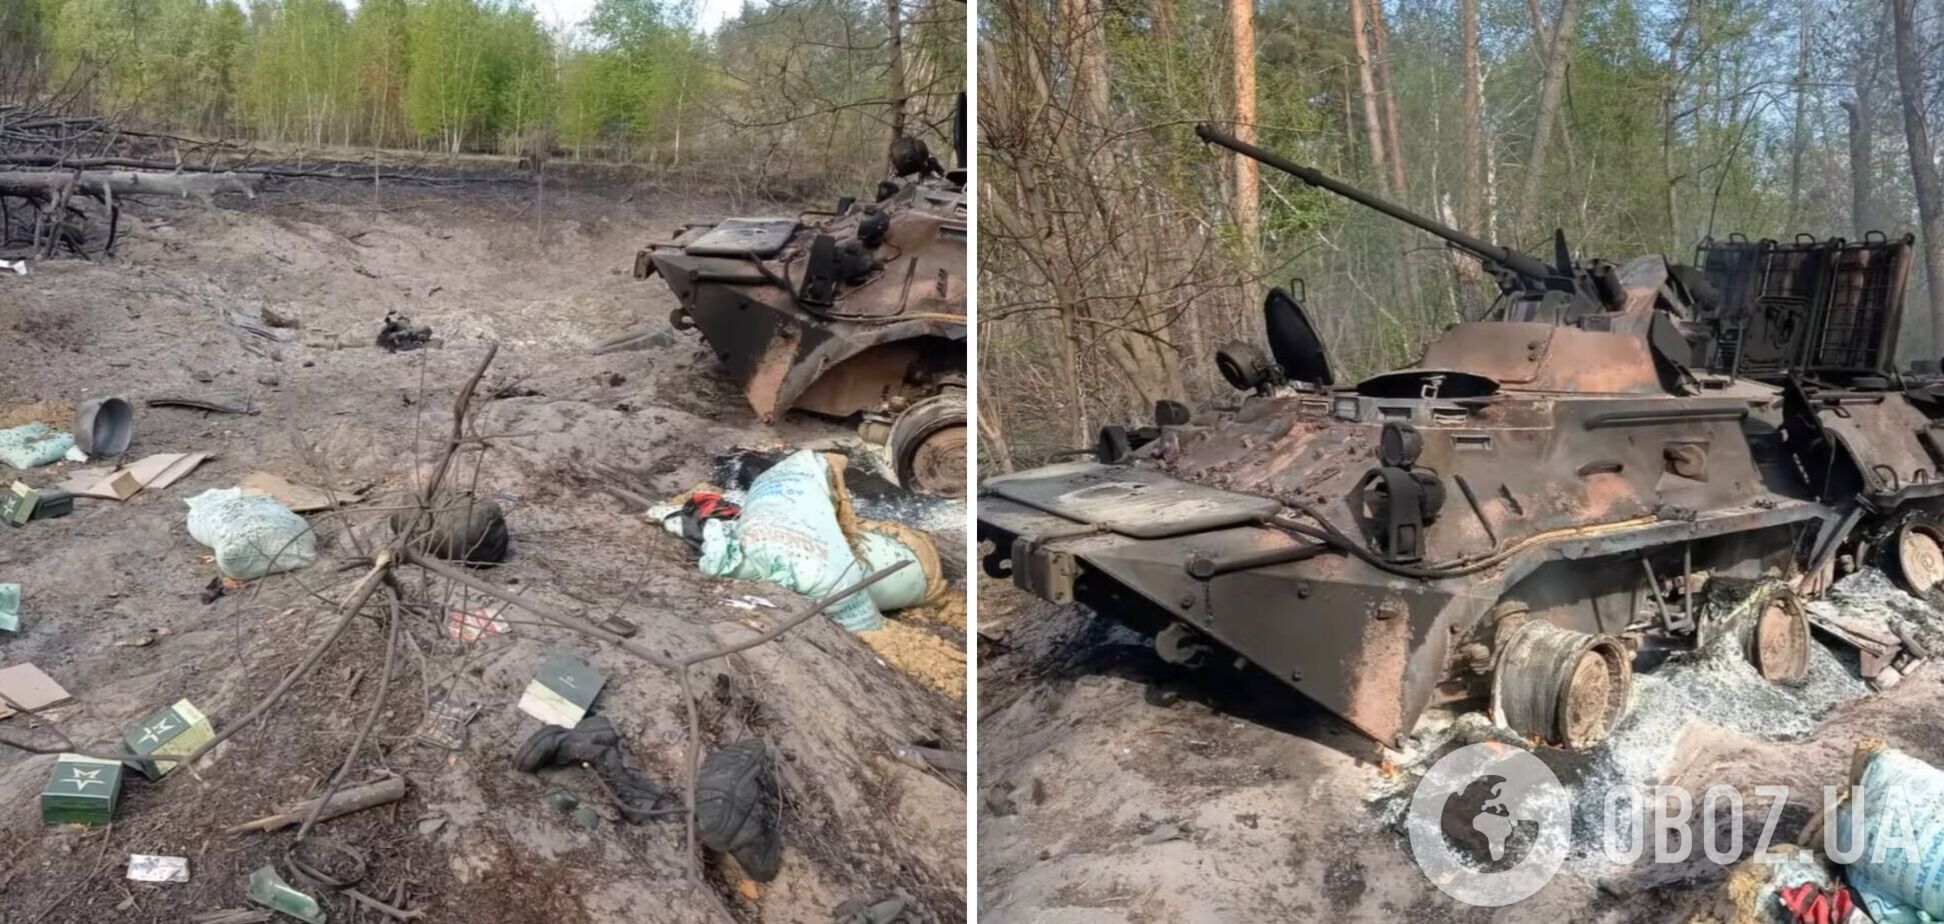 Украинские воины-десантники уничтожили группу спецназовцев из России. Видео 18+